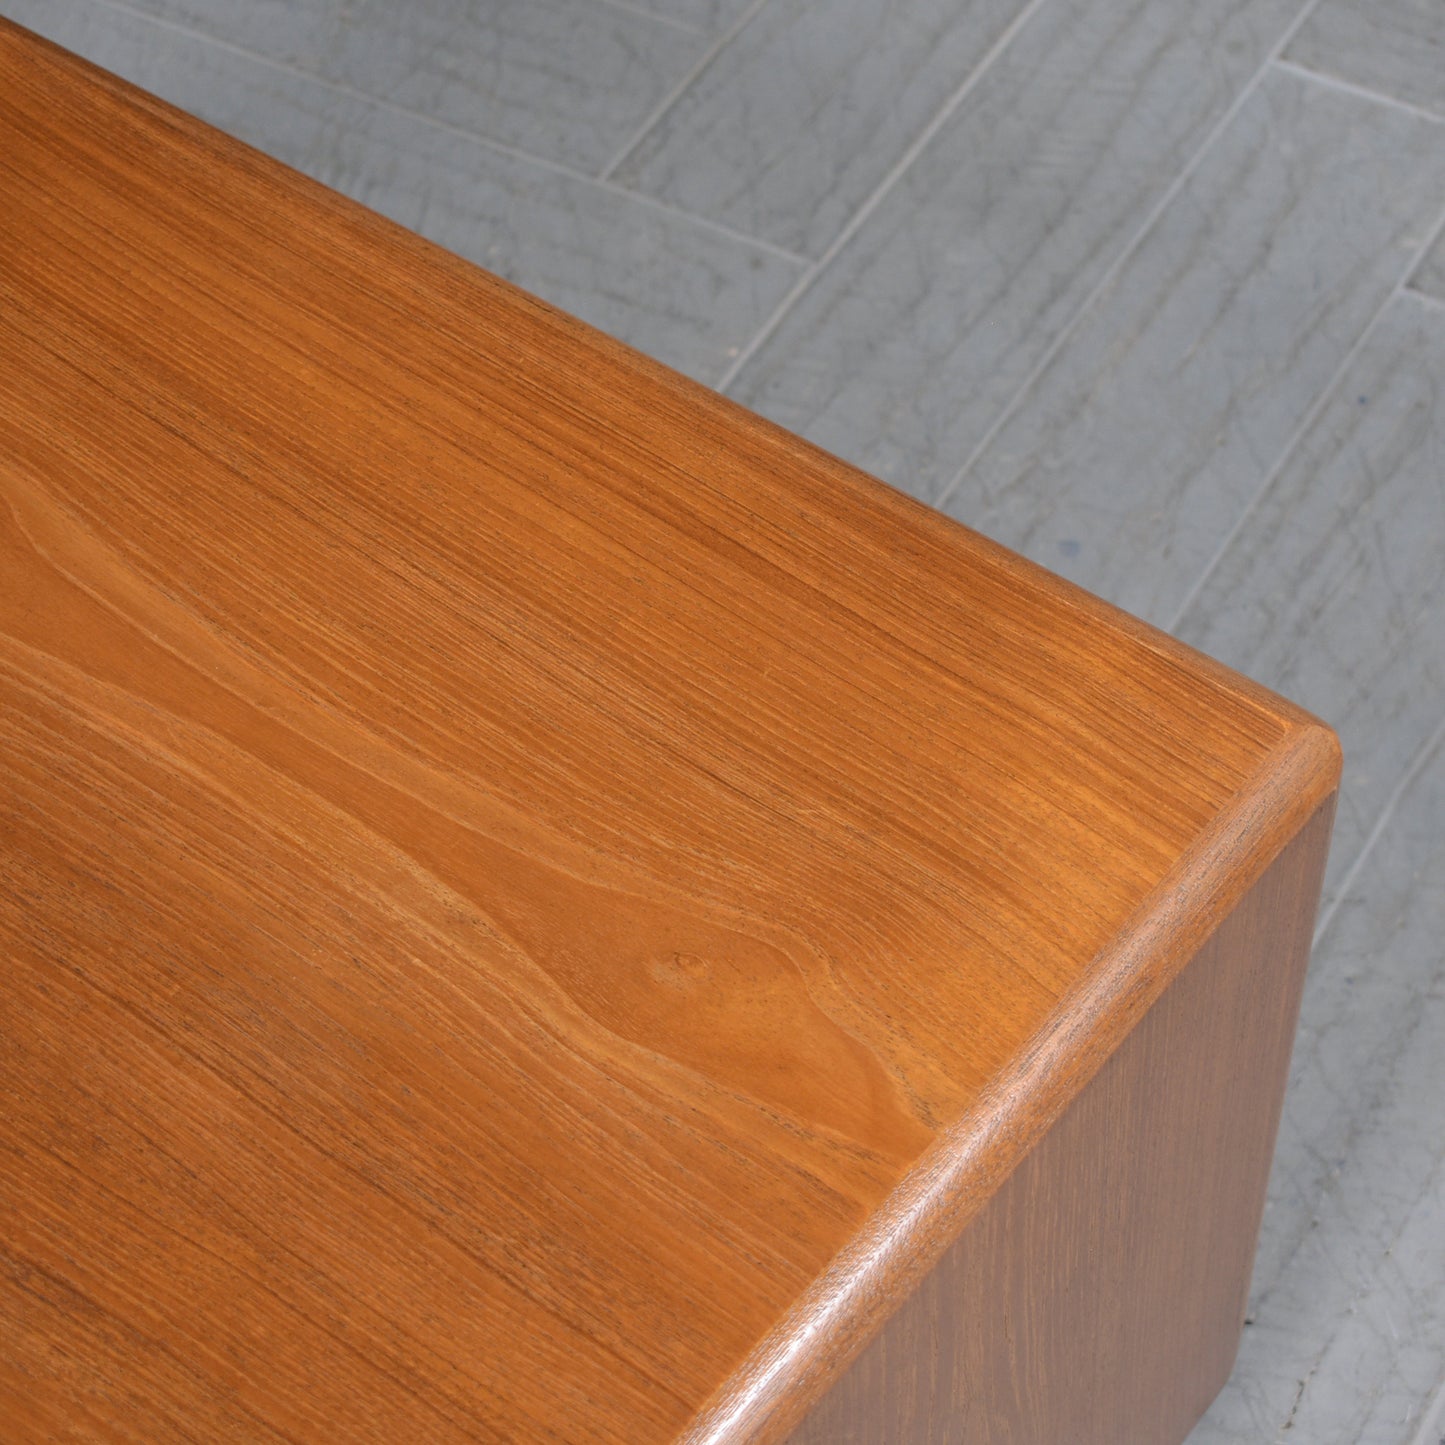 Vintage 1960s Teak Wood Waterfall Side Table - Fully Restored and Sleek Design